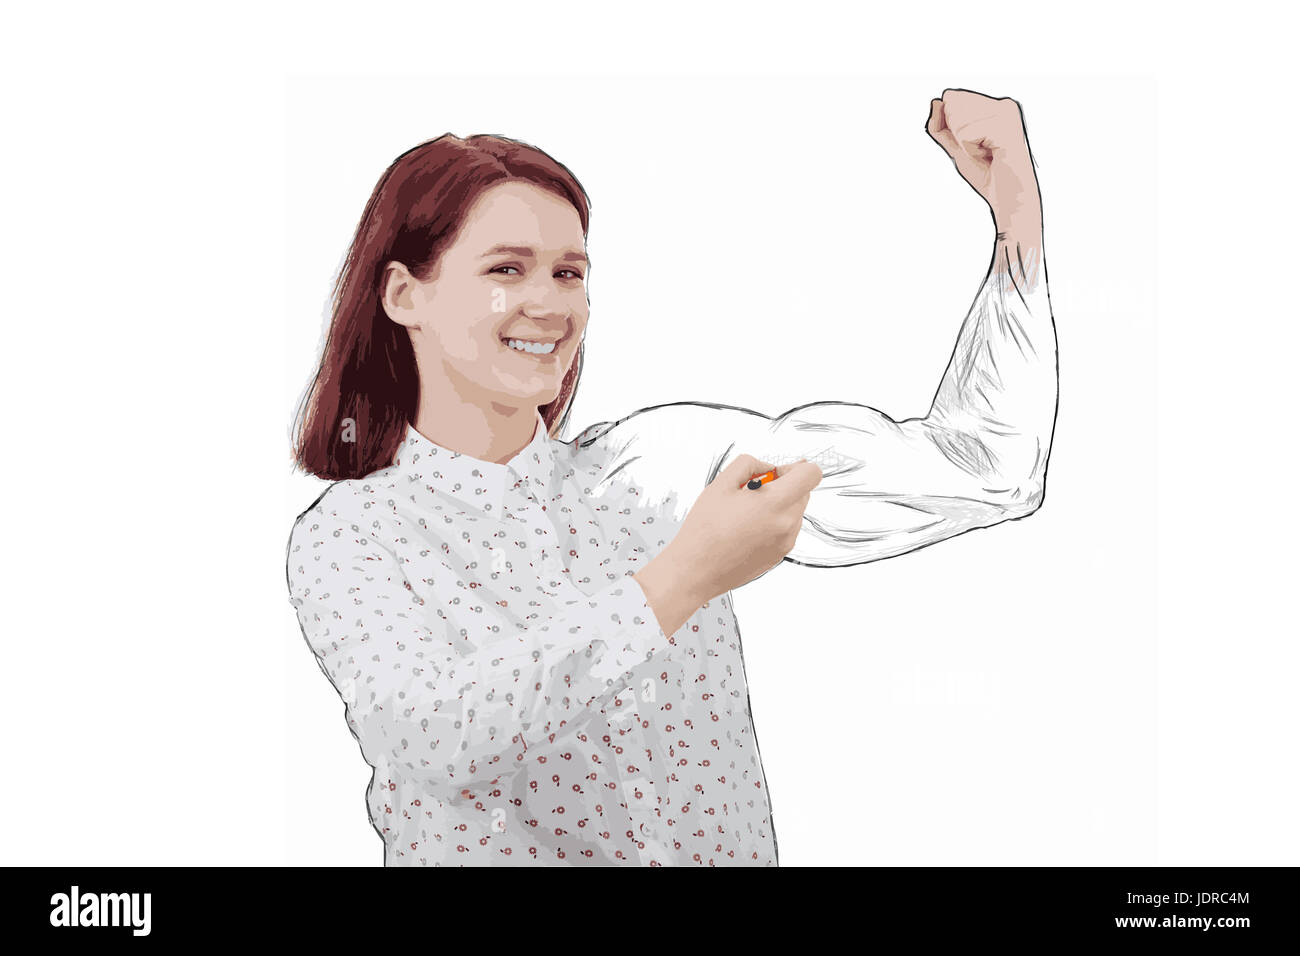 Illustration de businesswoman flexing muscles essayer de tirer un bras puissant, montrant sa force isolé sur blanc. L'expression du visage positif. Pe Banque D'Images